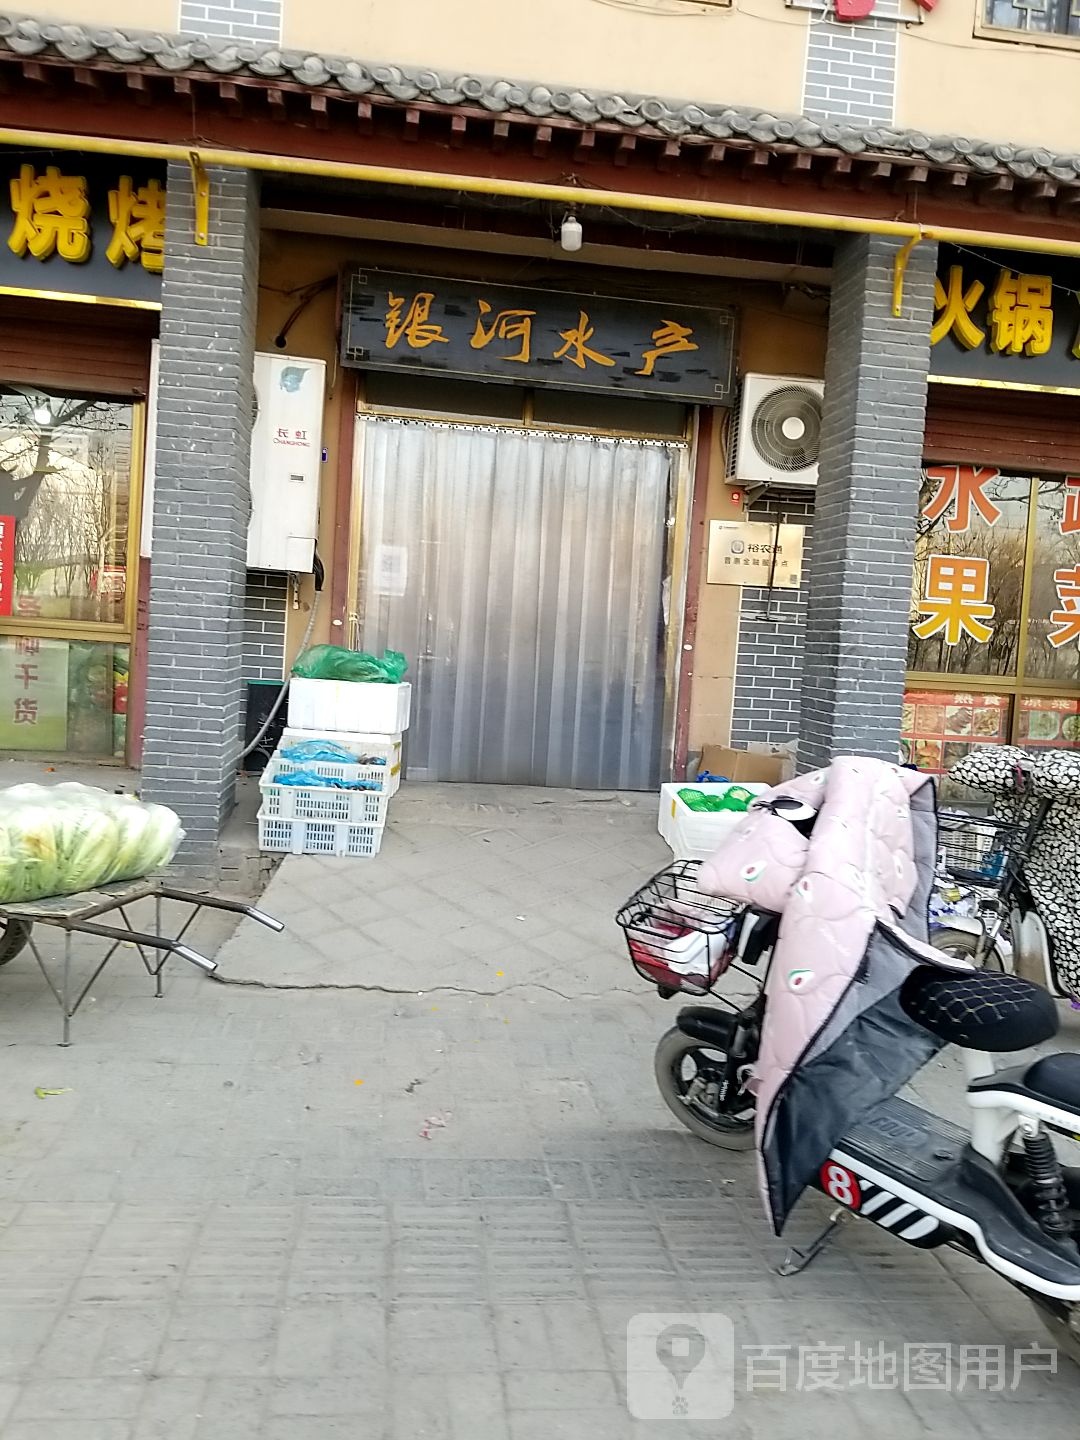 邯郸市广平县长春大道北段与赵王路交叉路口往西约130米